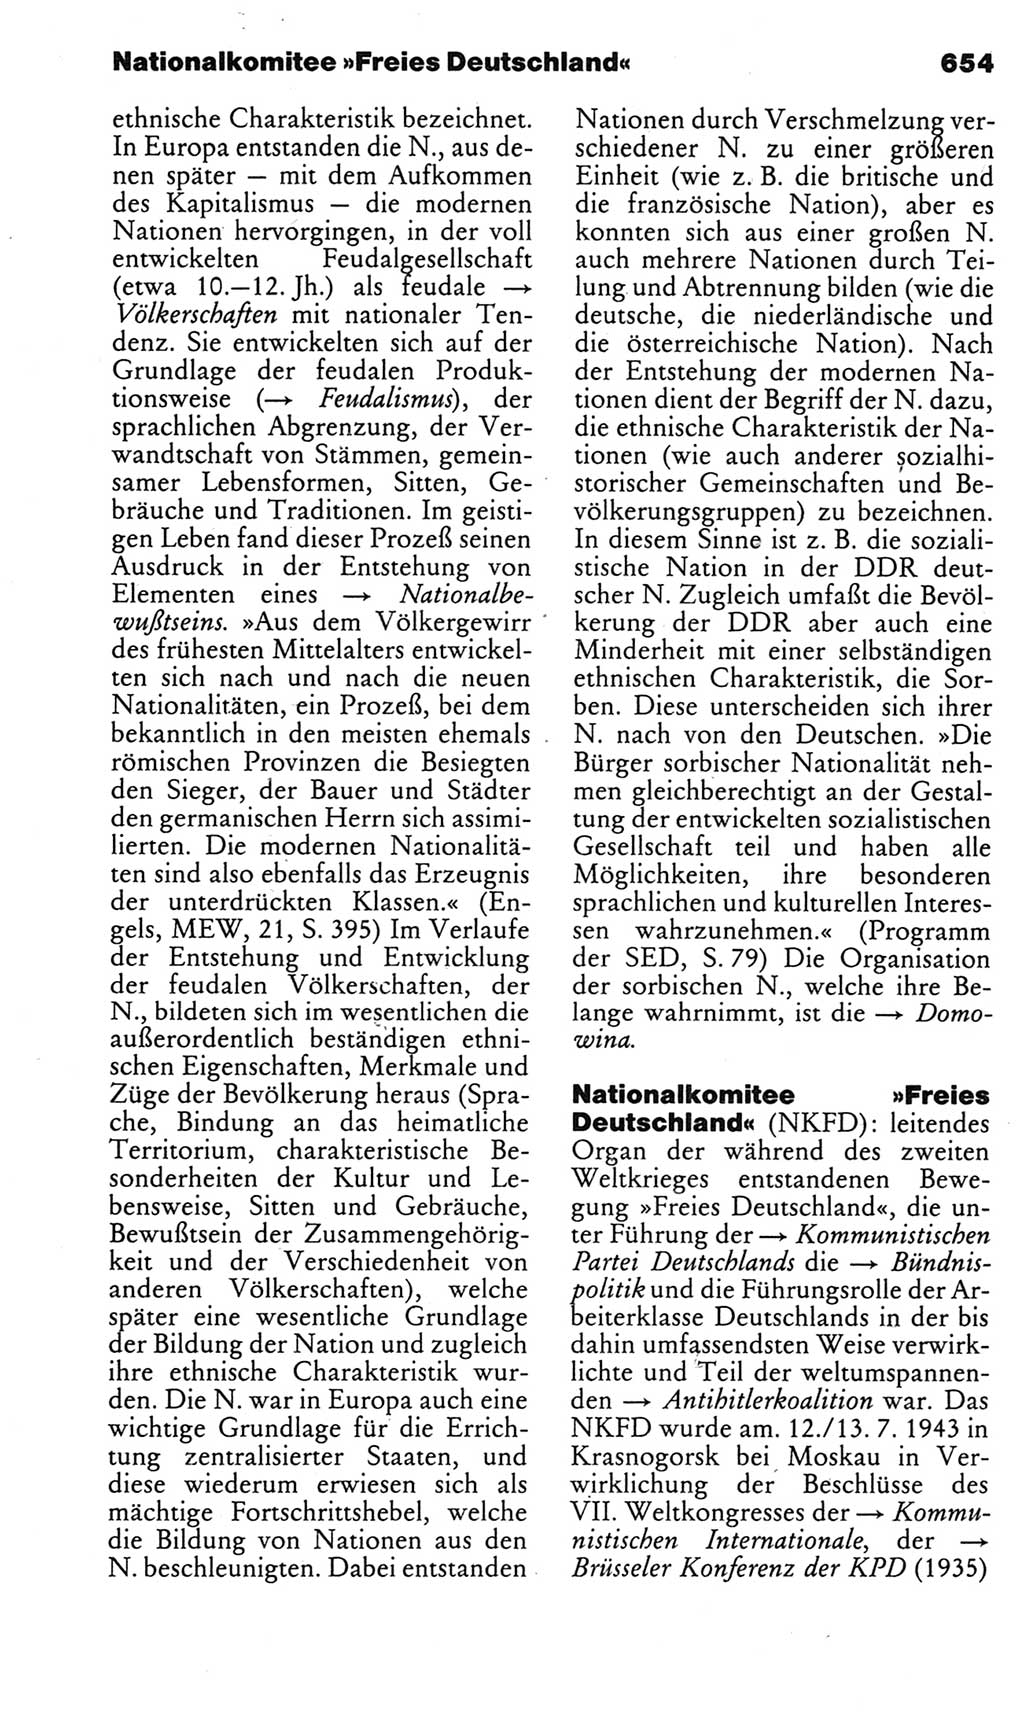 Kleines politisches Wörterbuch [Deutsche Demokratische Republik (DDR)] 1983, Seite 654 (Kl. pol. Wb. DDR 1983, S. 654)